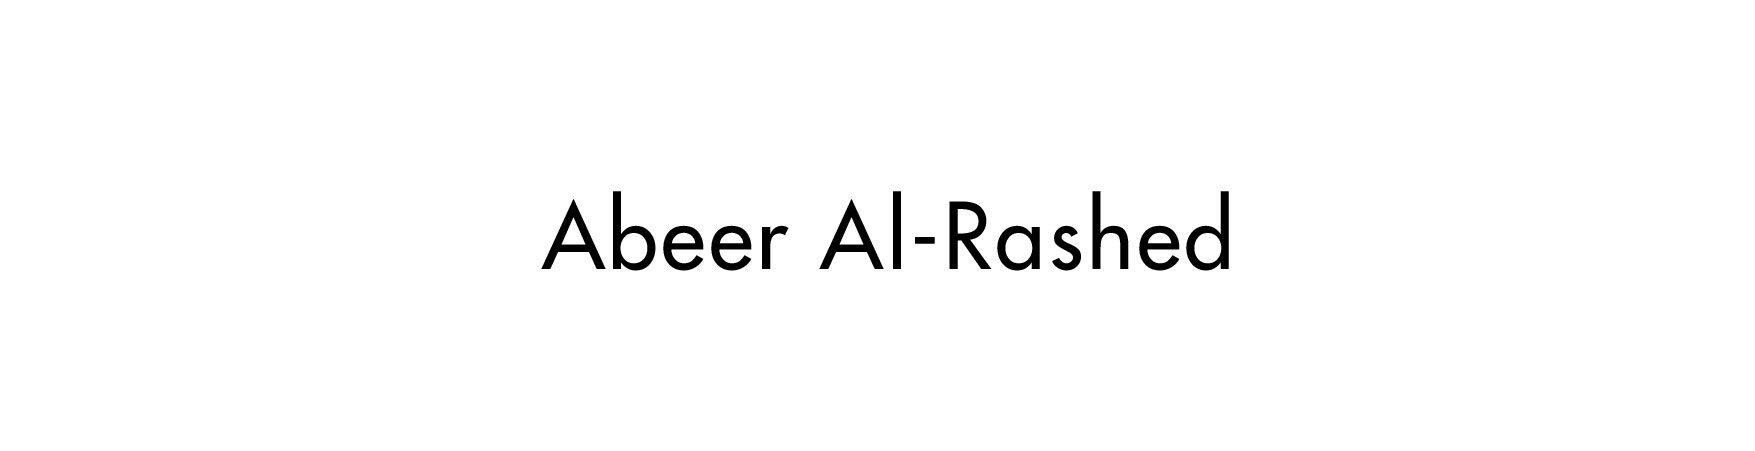 Abeer Al Rashed